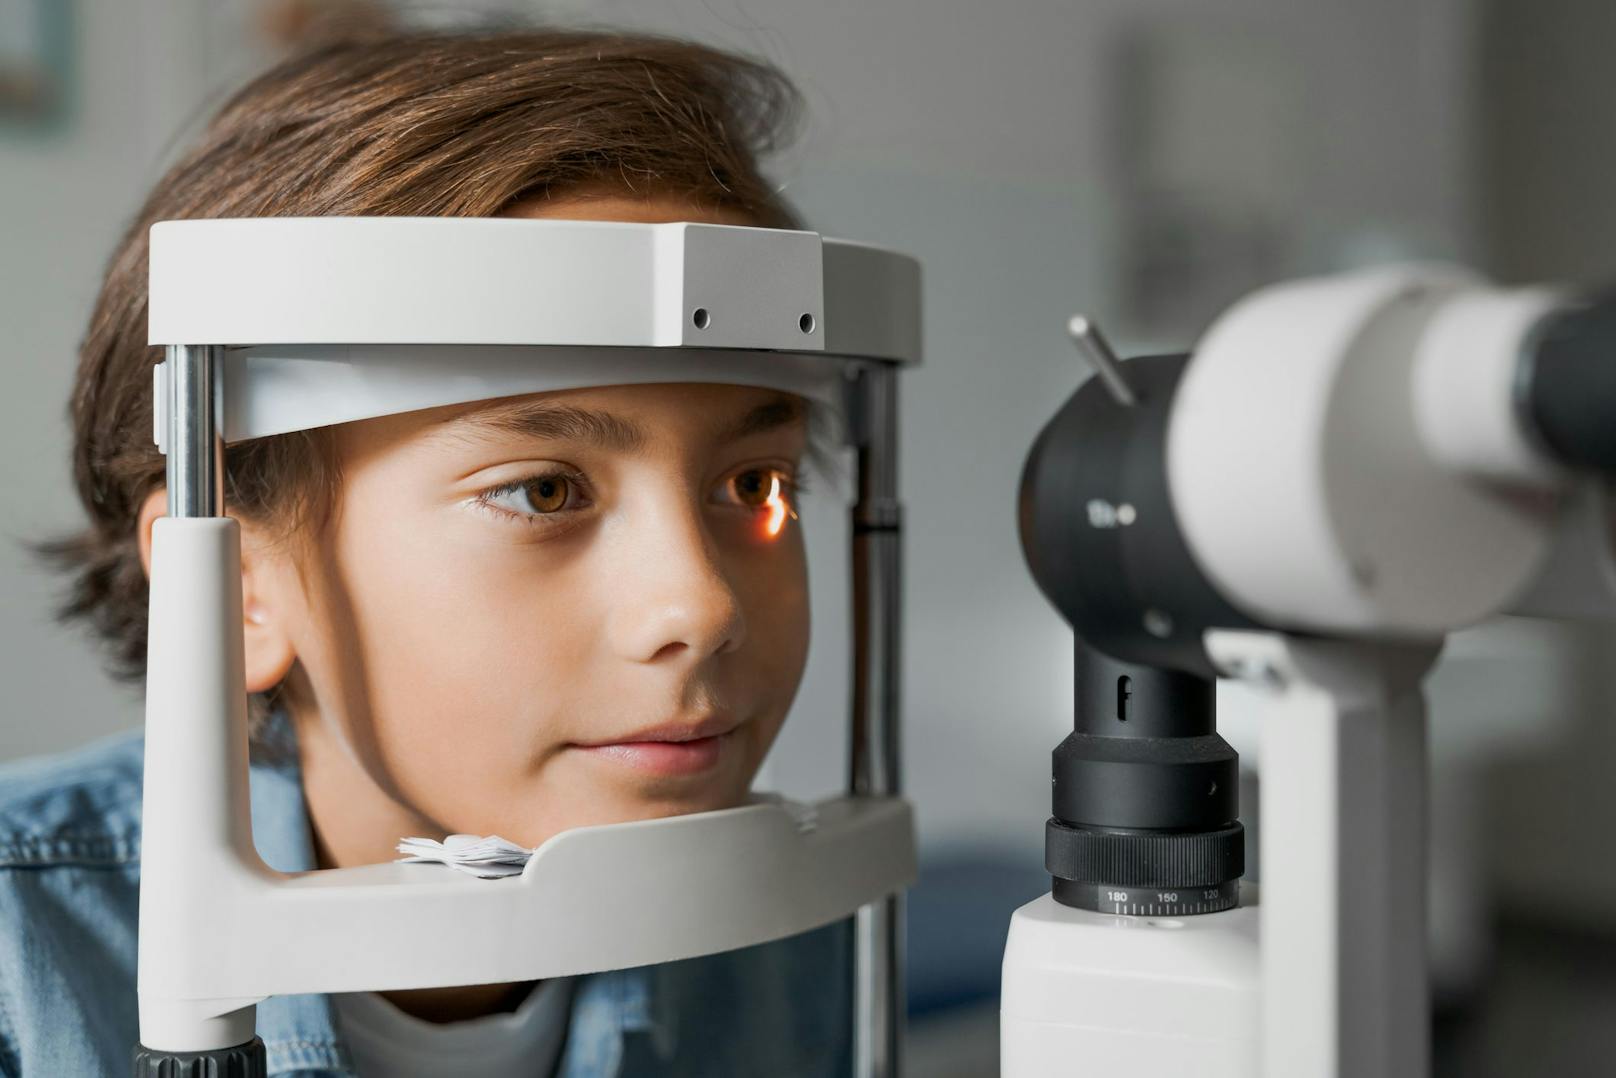 Augenärzte schlagen Alarm: Seit Beginn der Pandemie hat Kurzsichtigkeit bei Kindern deutlich zugenommen.